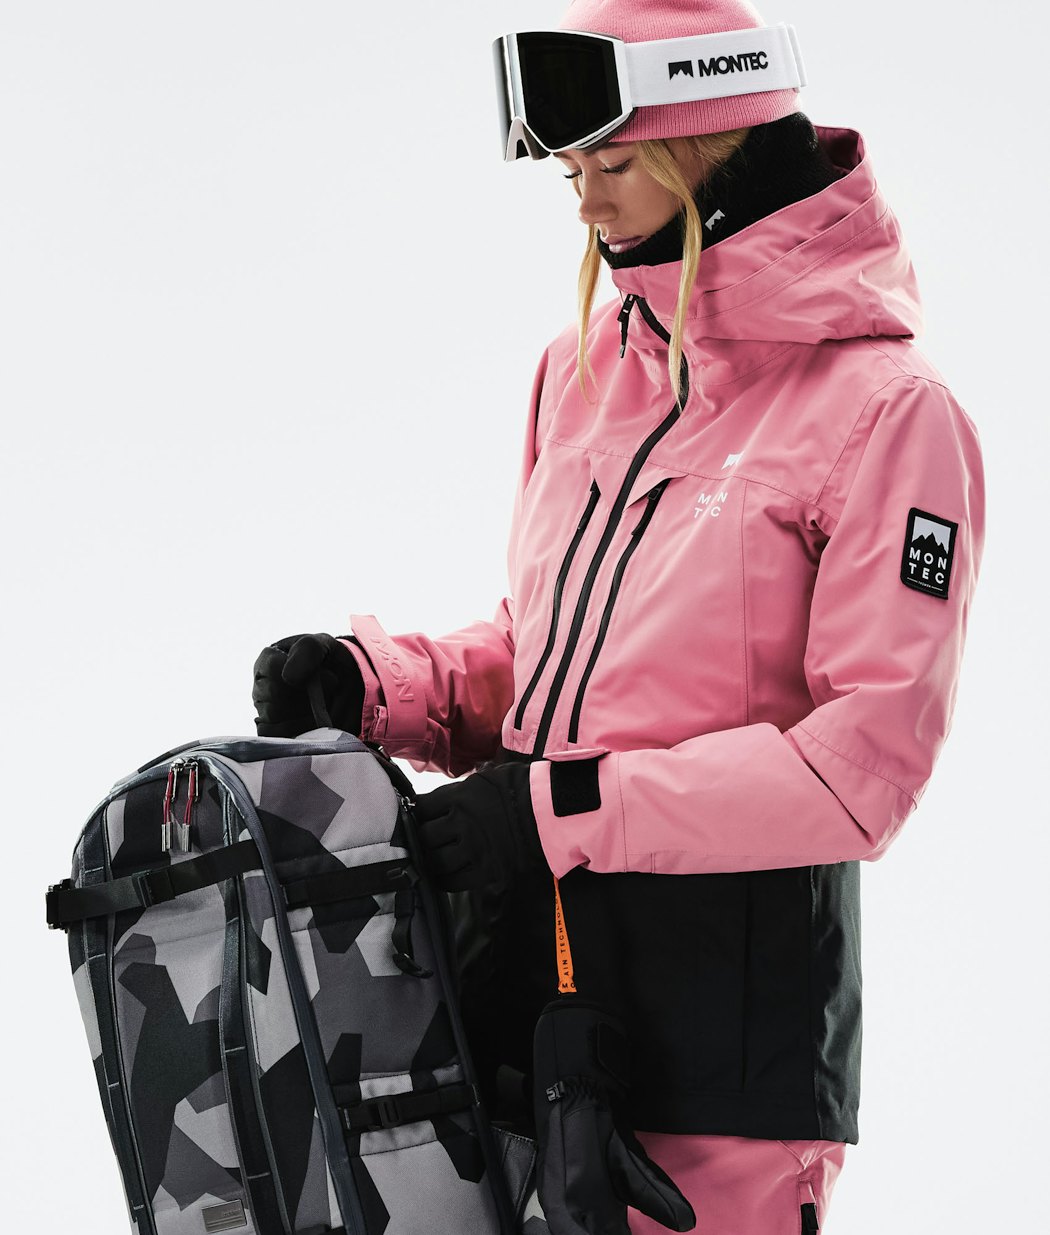 Moss W 2021 Veste Snowboard Femme Pink/Black Renewed